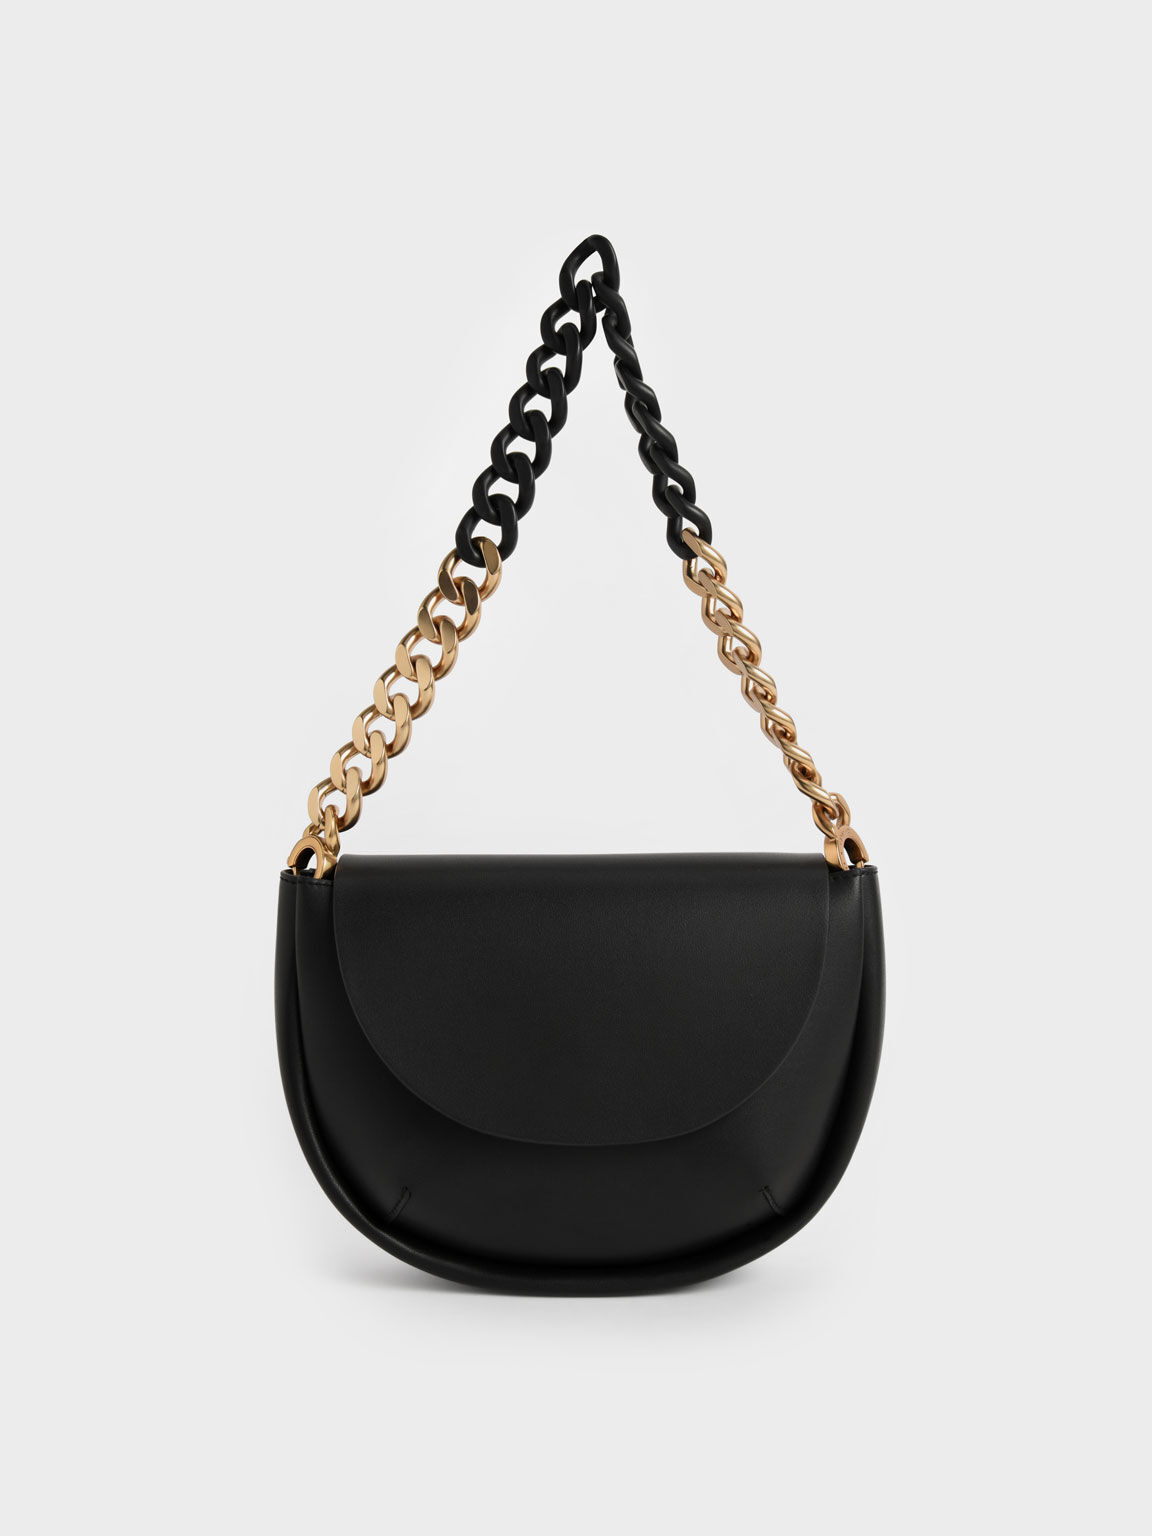 Half-Moon Chain Handle Bag, Black, hi-res